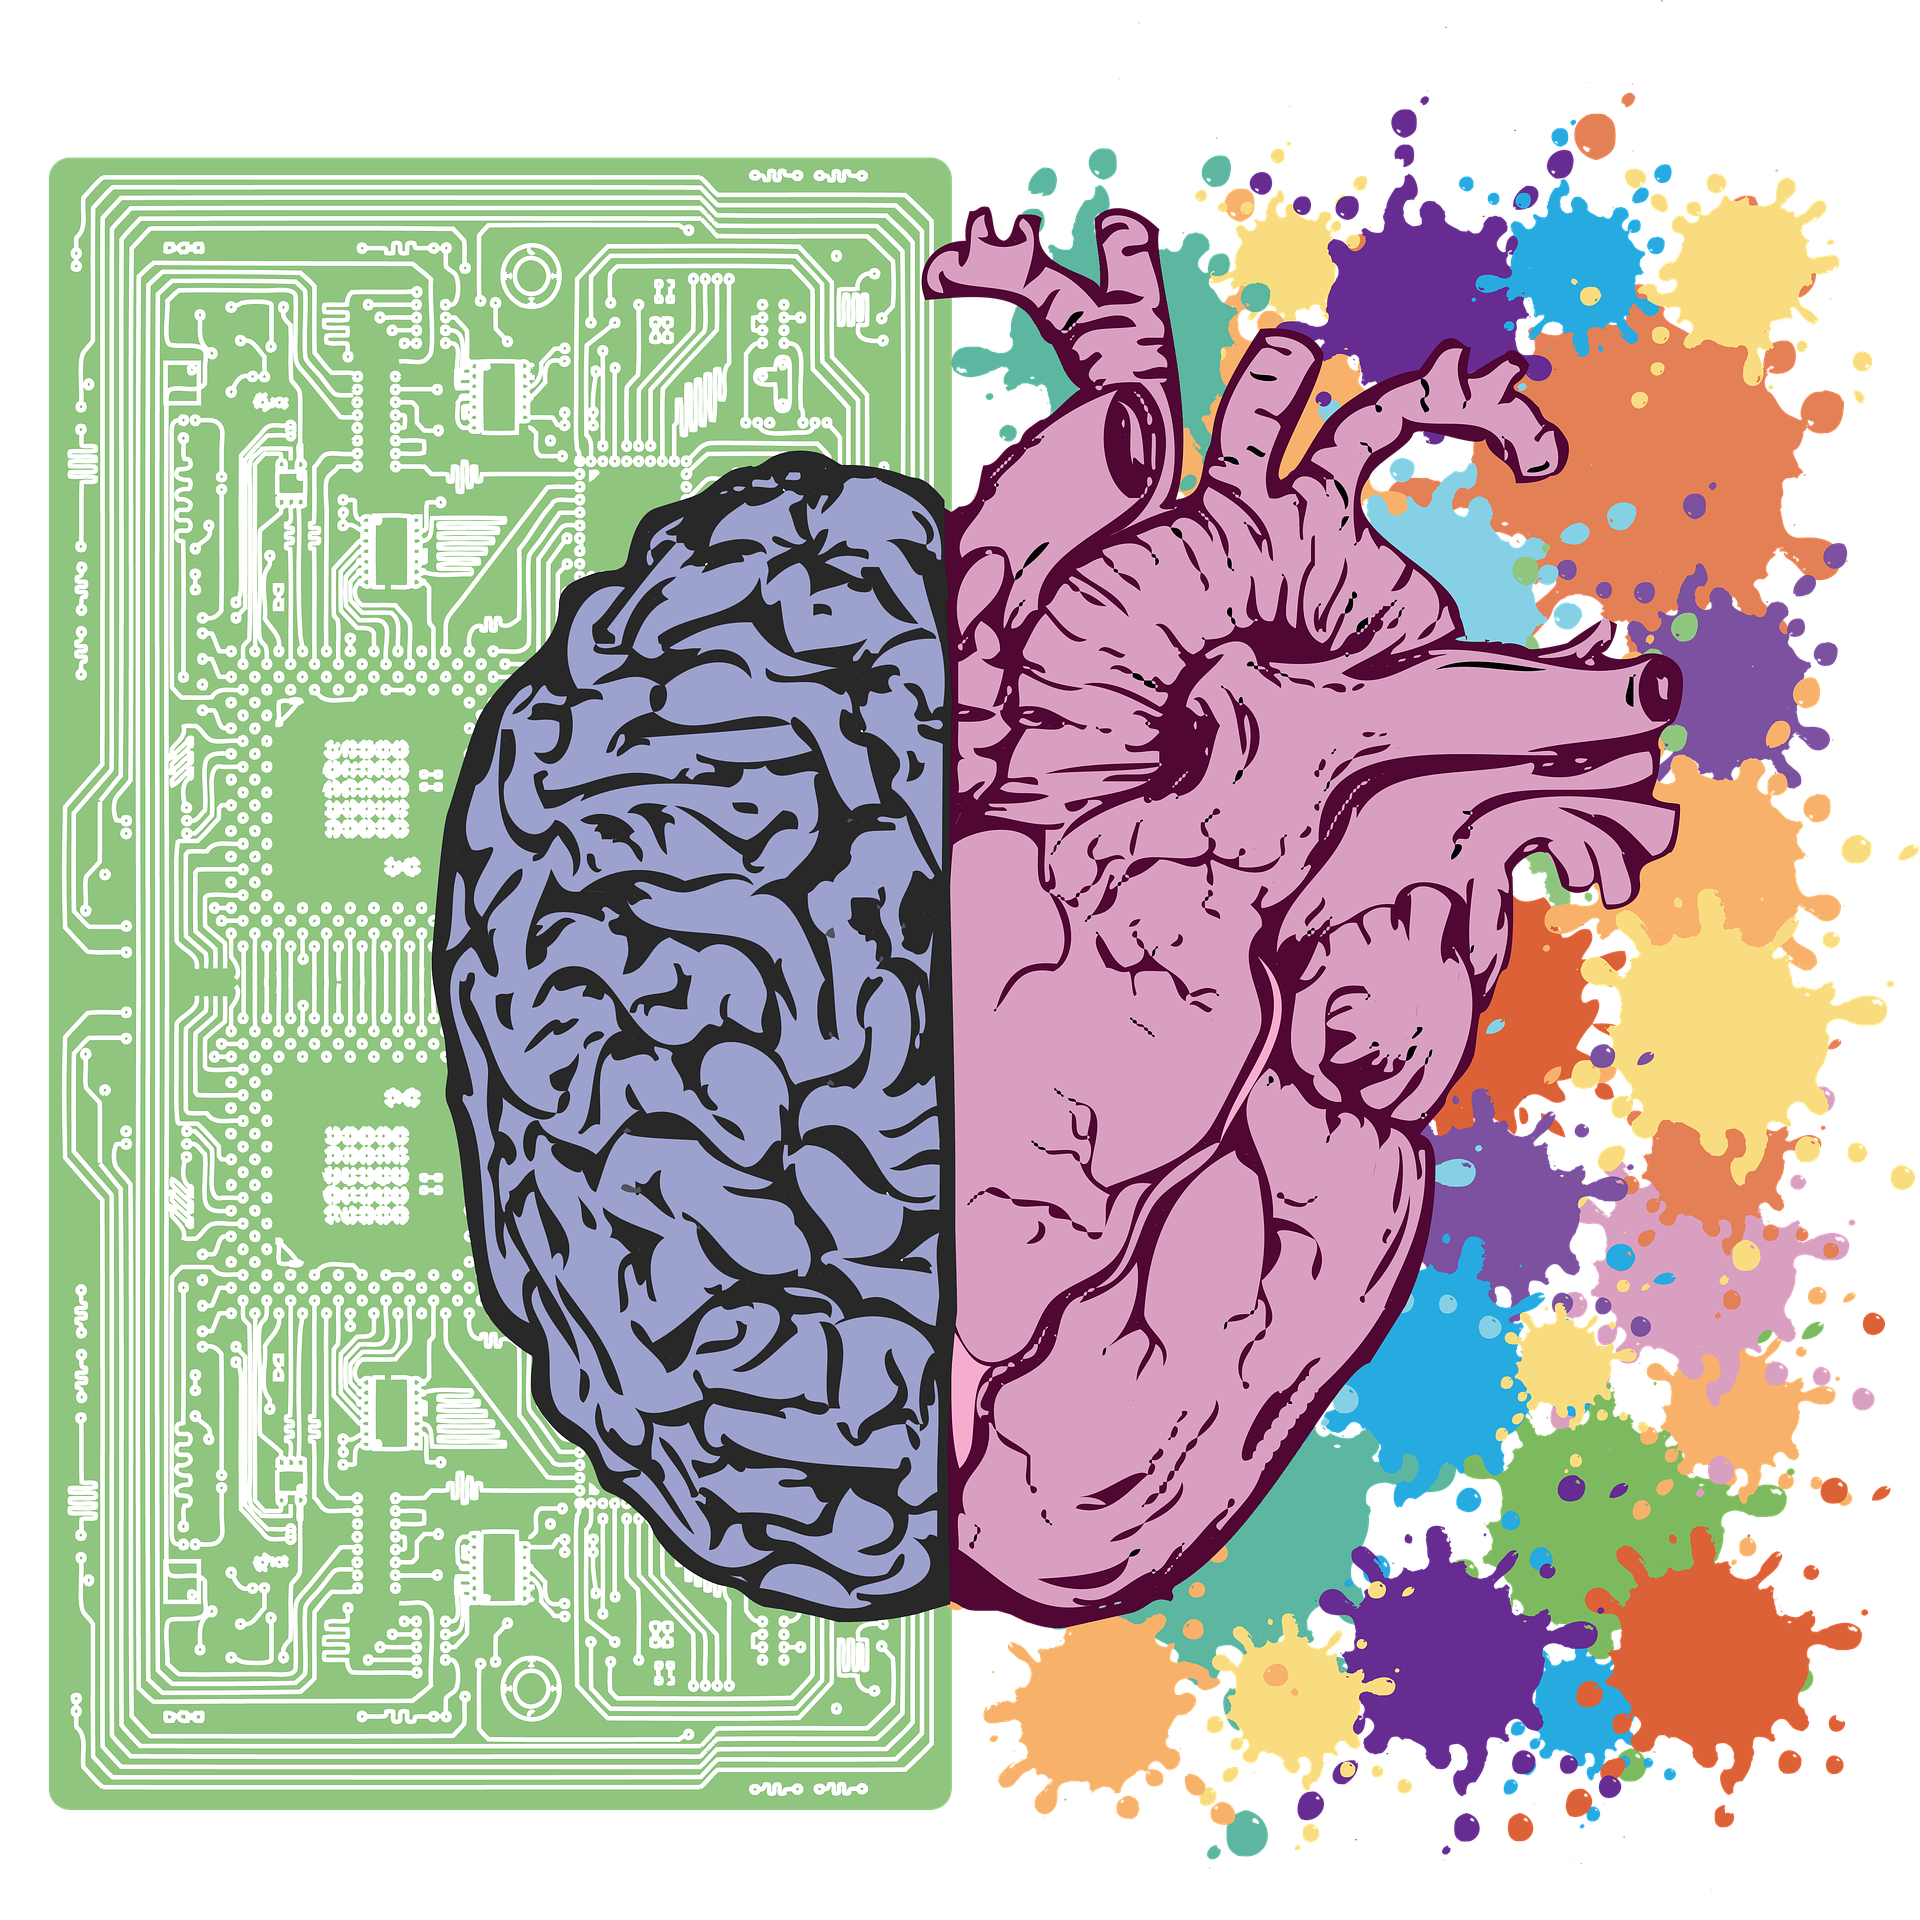 Les hémisphères droit et gauche du cerveau avec chaque côté d'une couleur différente. Le côté gauche est dessiné sur le fond d'une puce informatique et le côté droit sur un fond de touches de différentes couleurs vives.